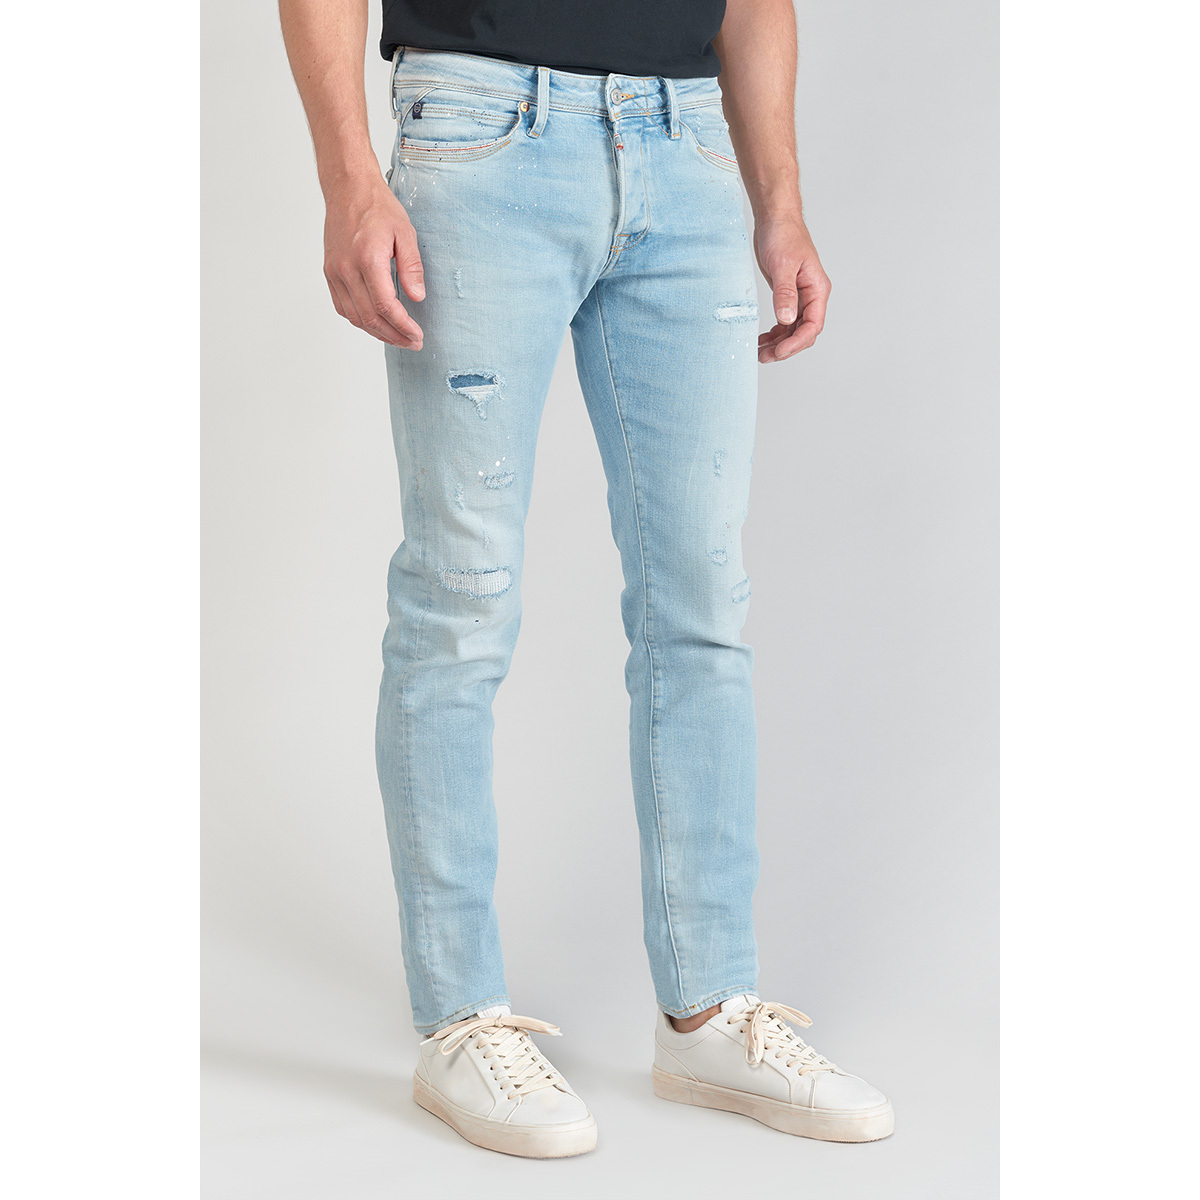 Le Temps des Cerises Bleu Delphes 700/11 adjusted jeans